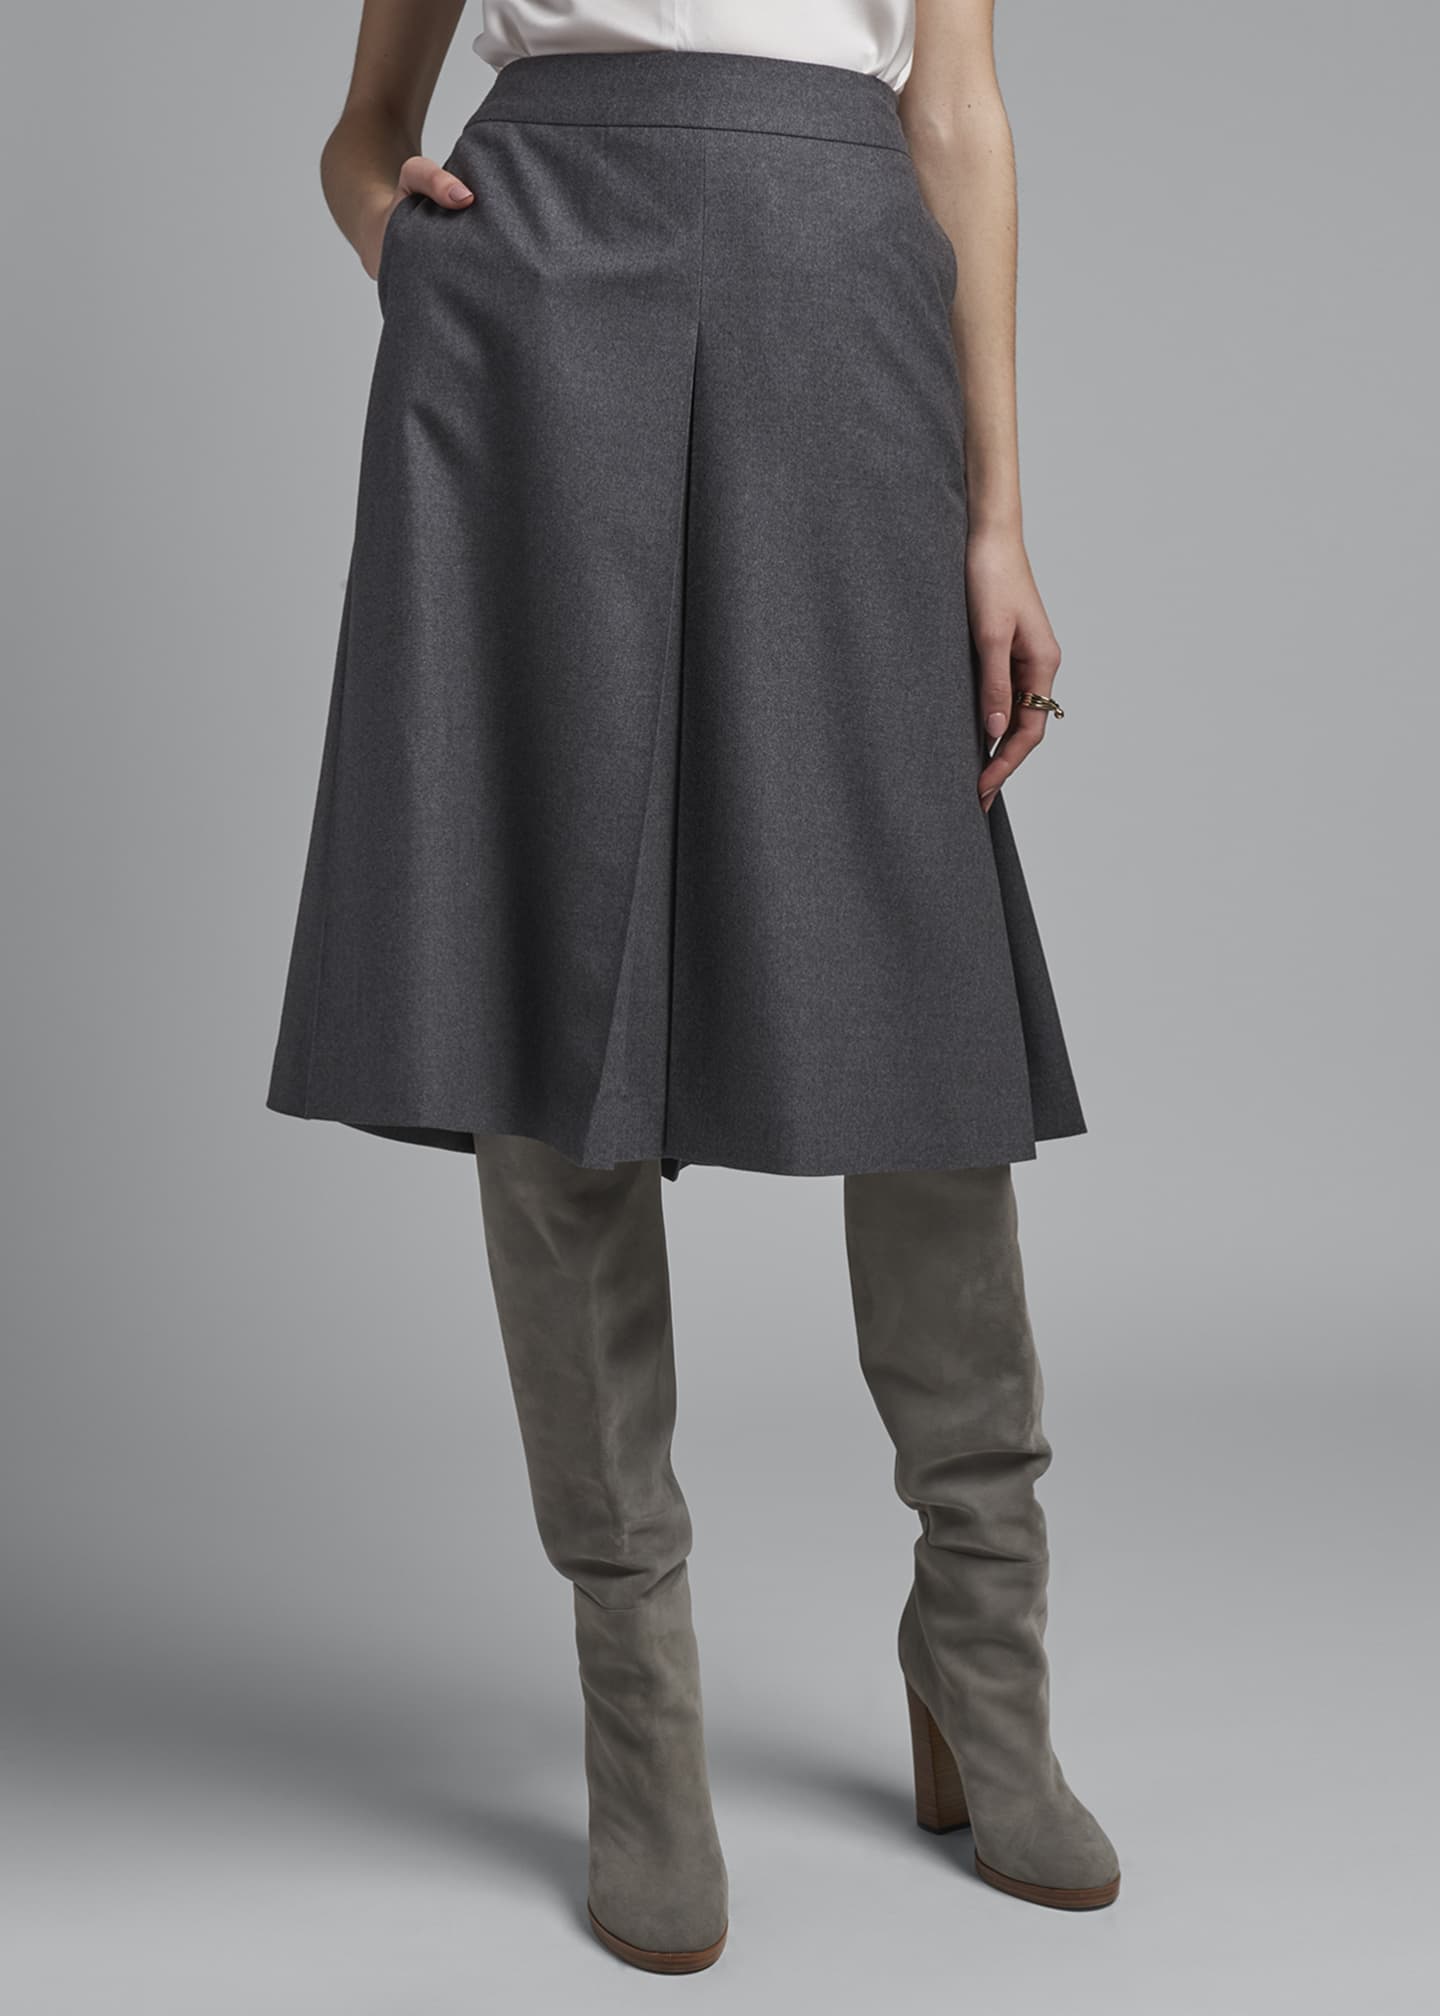 Agnona Wool A-Line Skirt - Bergdorf Goodman